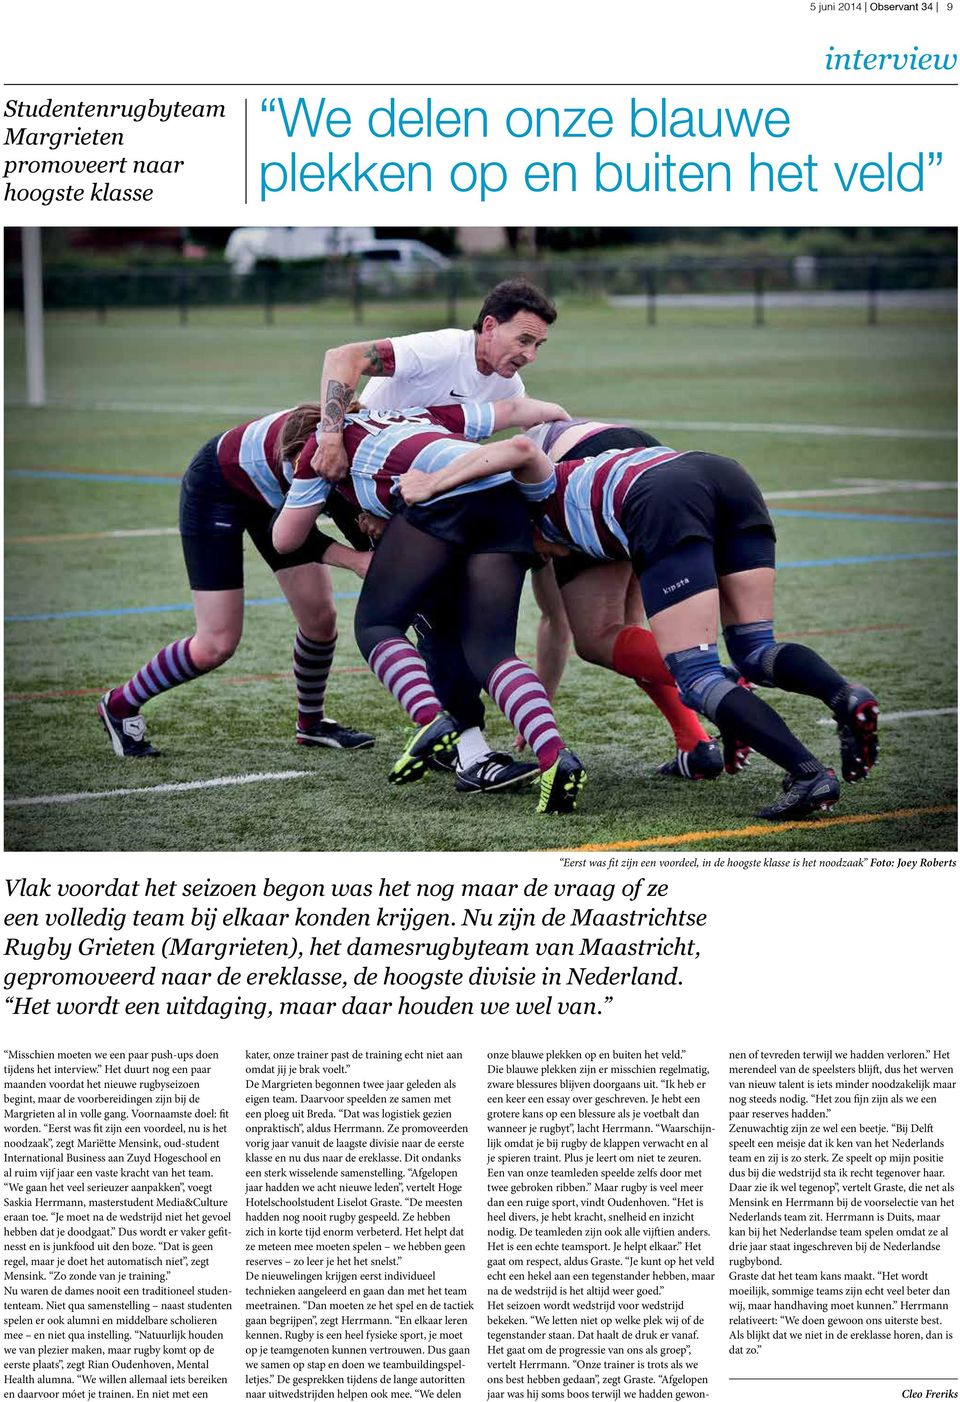 Nu zijn de Maastrichtse Rugby Grieten (Margrieten), het damesrugbyteam van Maastricht, gepromoveerd naar de ereklasse, de hoogste divisie in Nederland.